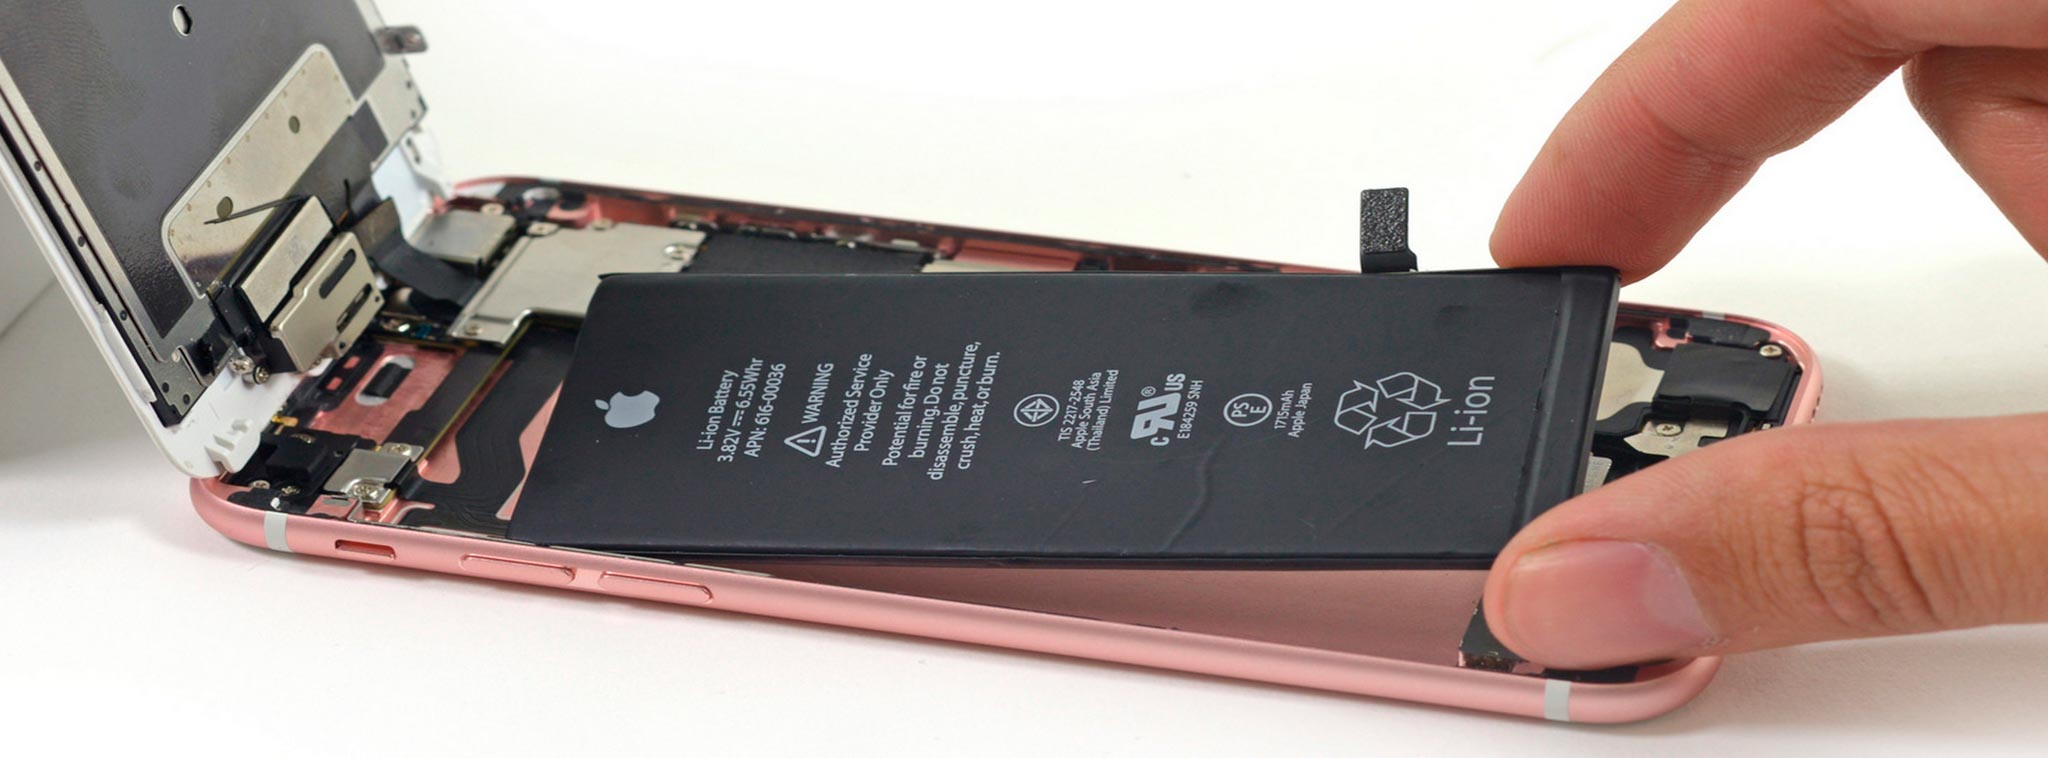 LG Chem độc quyền cung cấp pin chữ L cho iPhone 9?